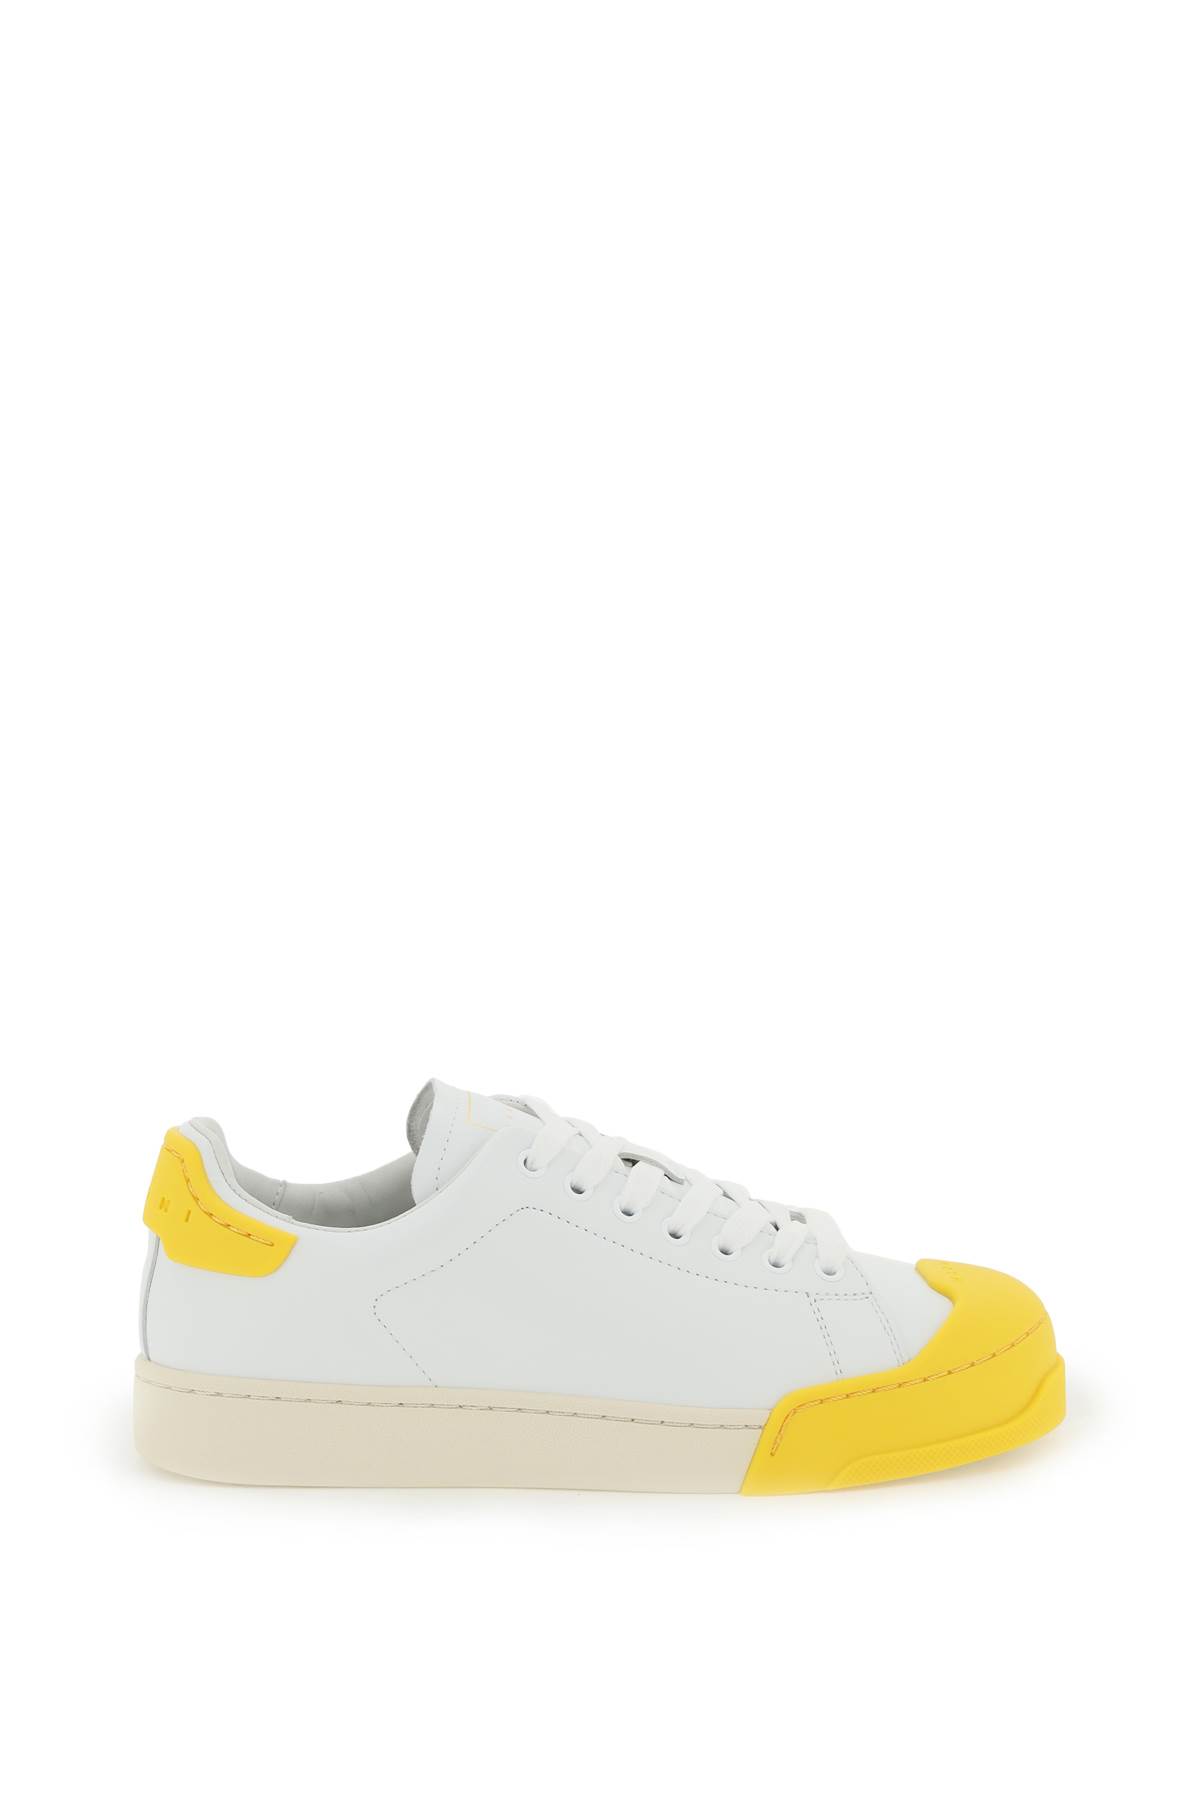 Shop Marni Dada Bumper Sneakers In Yellow